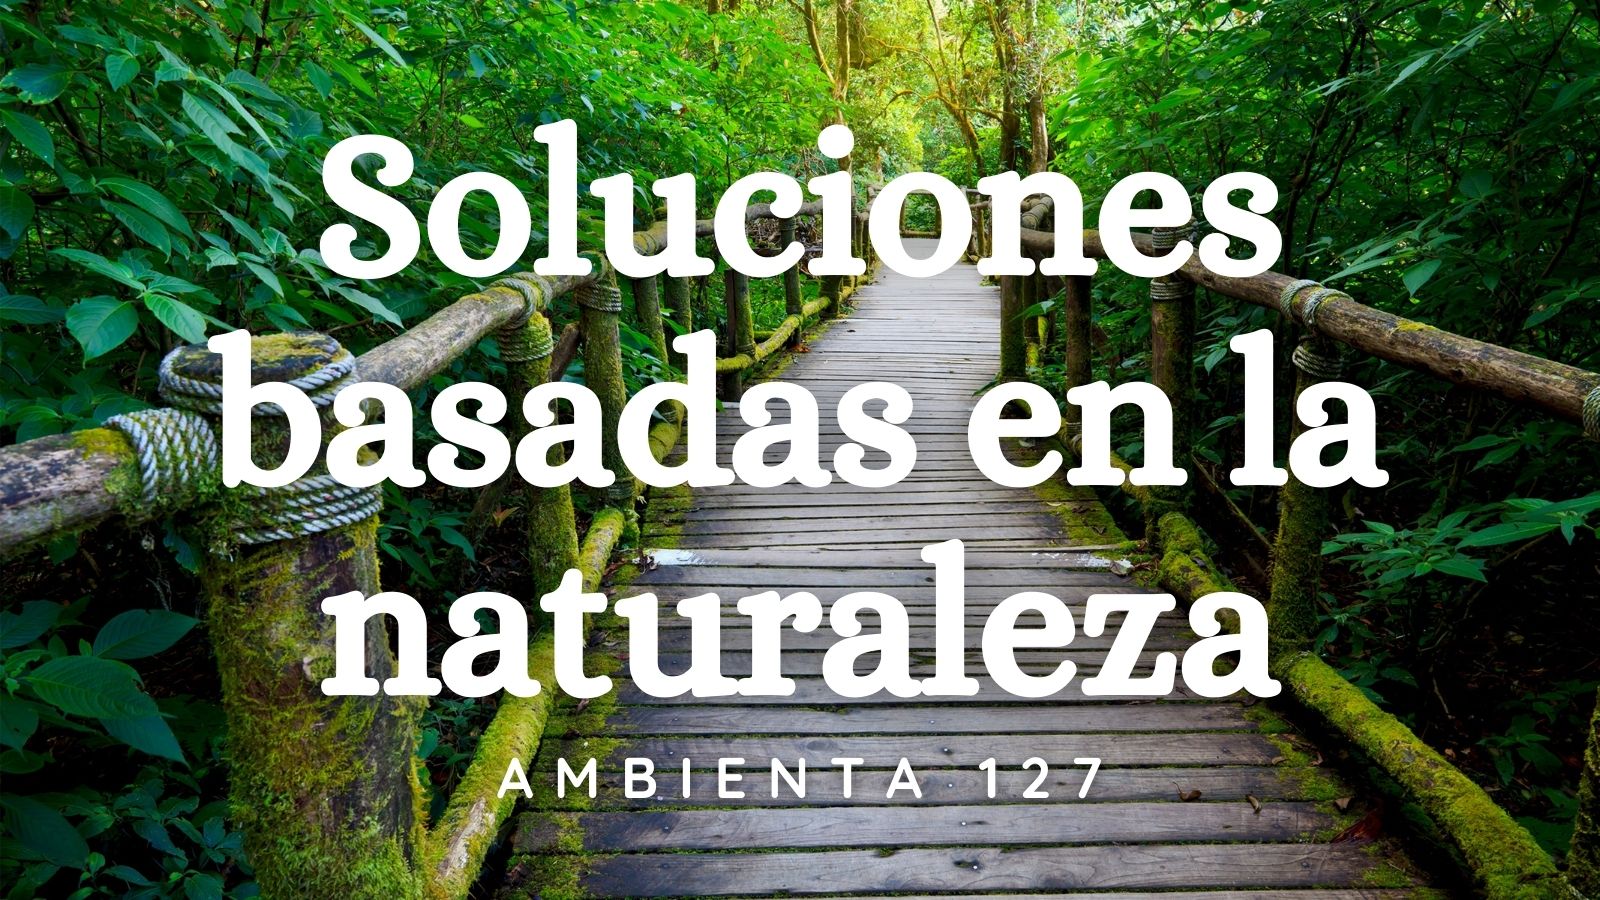 AMBIENTA PANTALLA Y REDESLa revista Ambienta publica un nuevo número dedicado a las Soluciones basadas en la Naturaleza